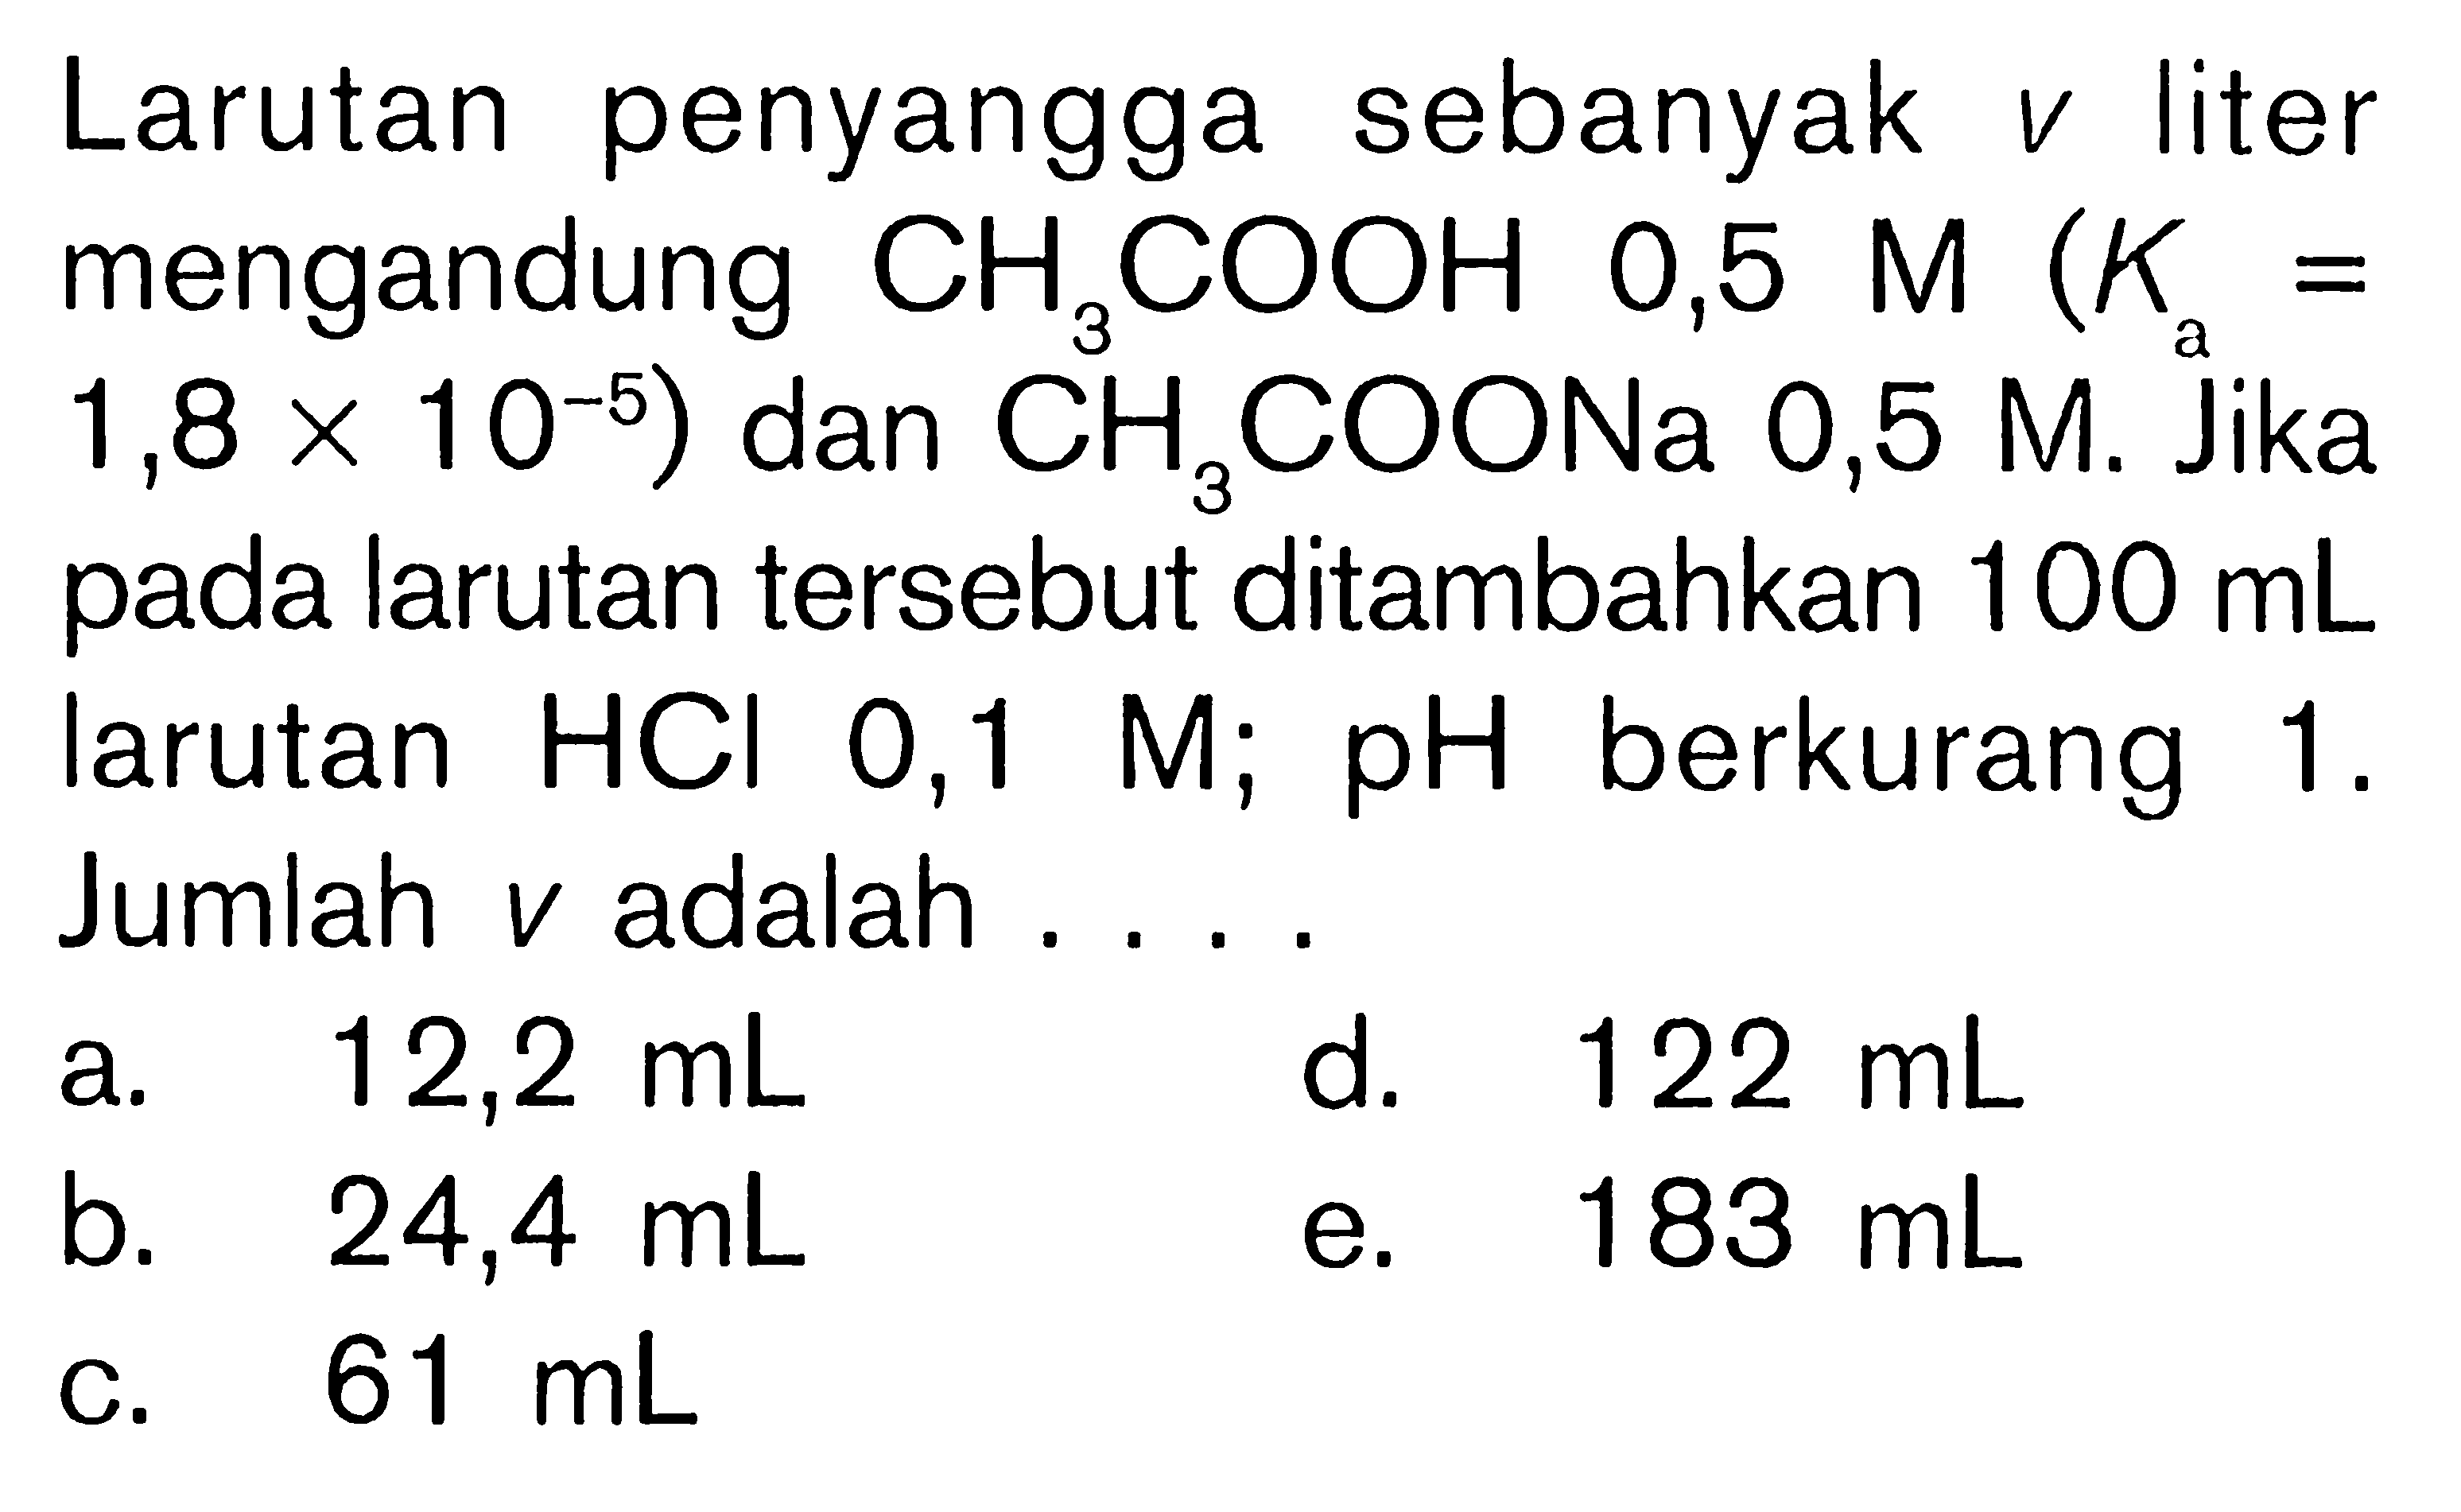 Larutan penyangga sebanyak  v  liter mengandung  CH3COOH  0,5 M (K/a=1,8x10^-5) dan  CH3COONa 0,5 M. Jika pada larutan tersebut ditambahkan  100 mL  larutan  HCl 0,1 M ; pH  berkurang 1 . Jumlah  v  adalah ....